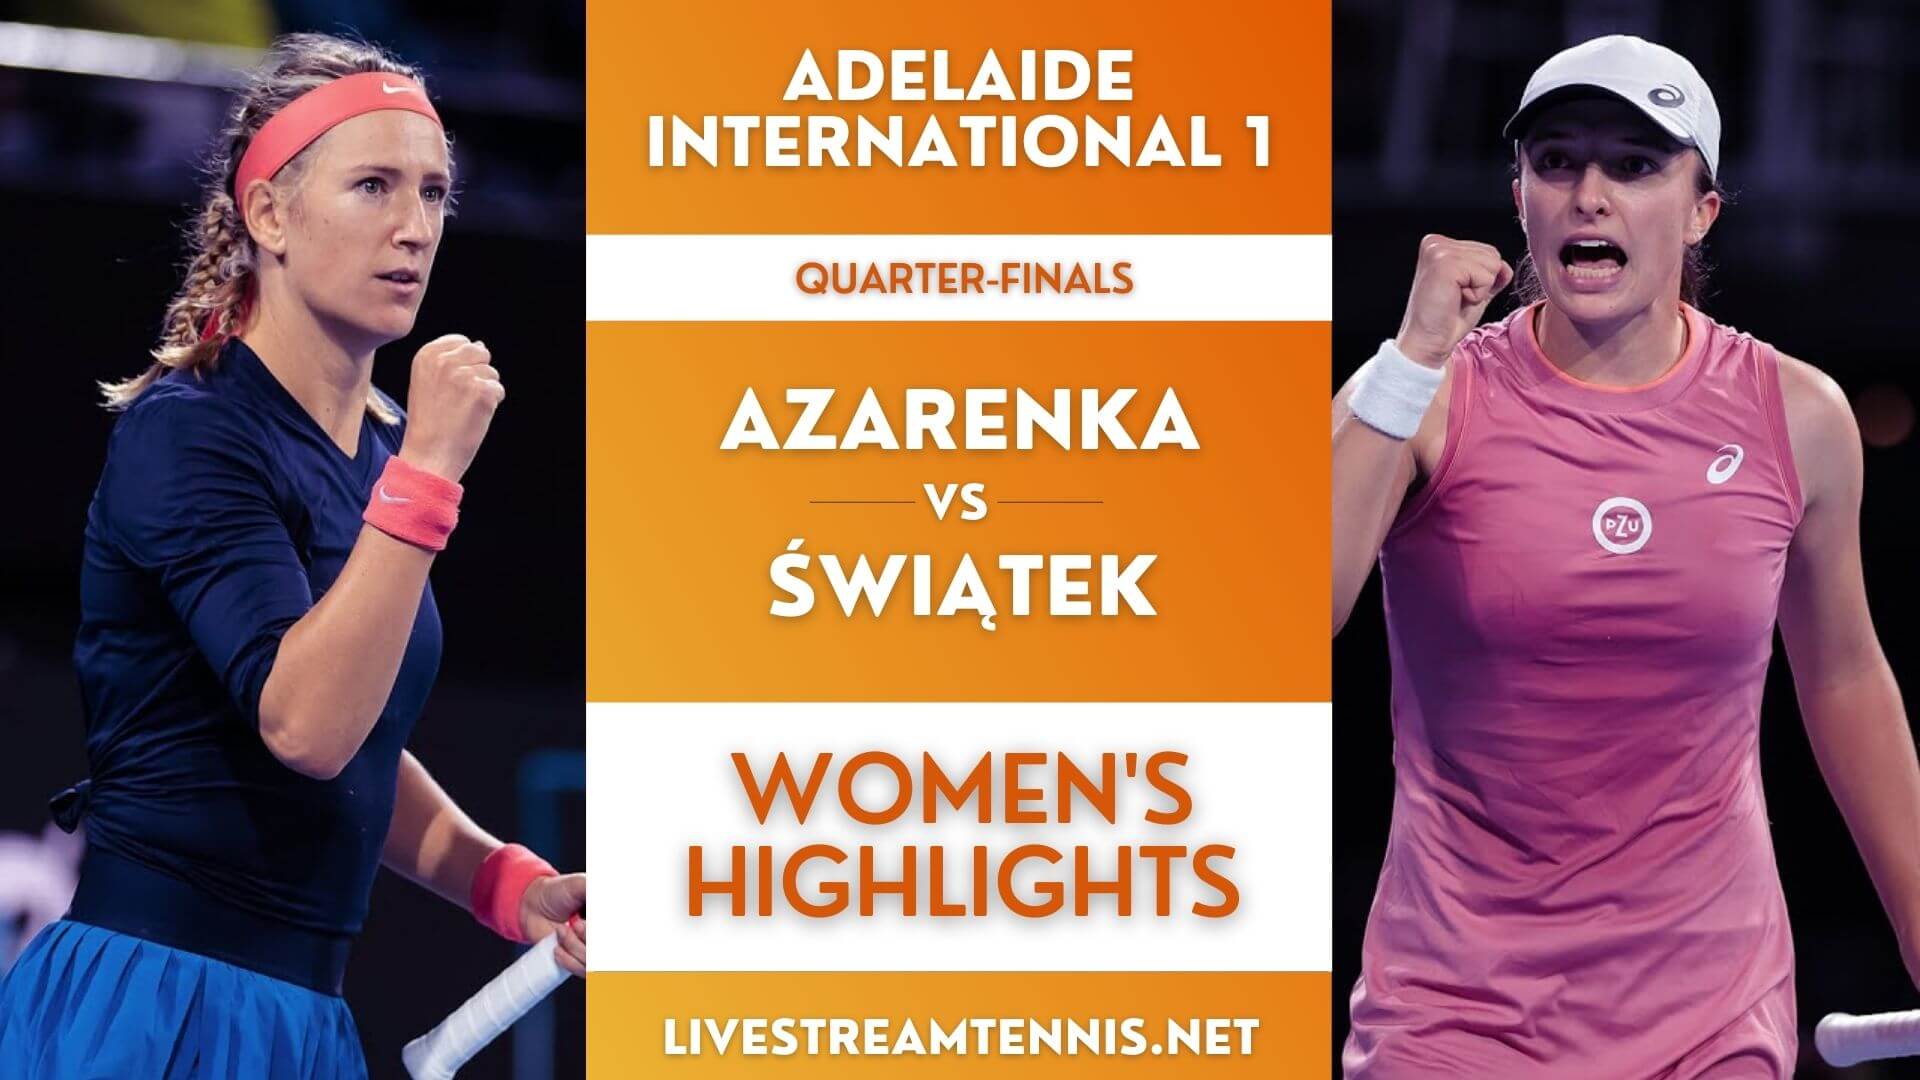 Adelaide 1 WTA Quarter Final 1 Highlights 2022